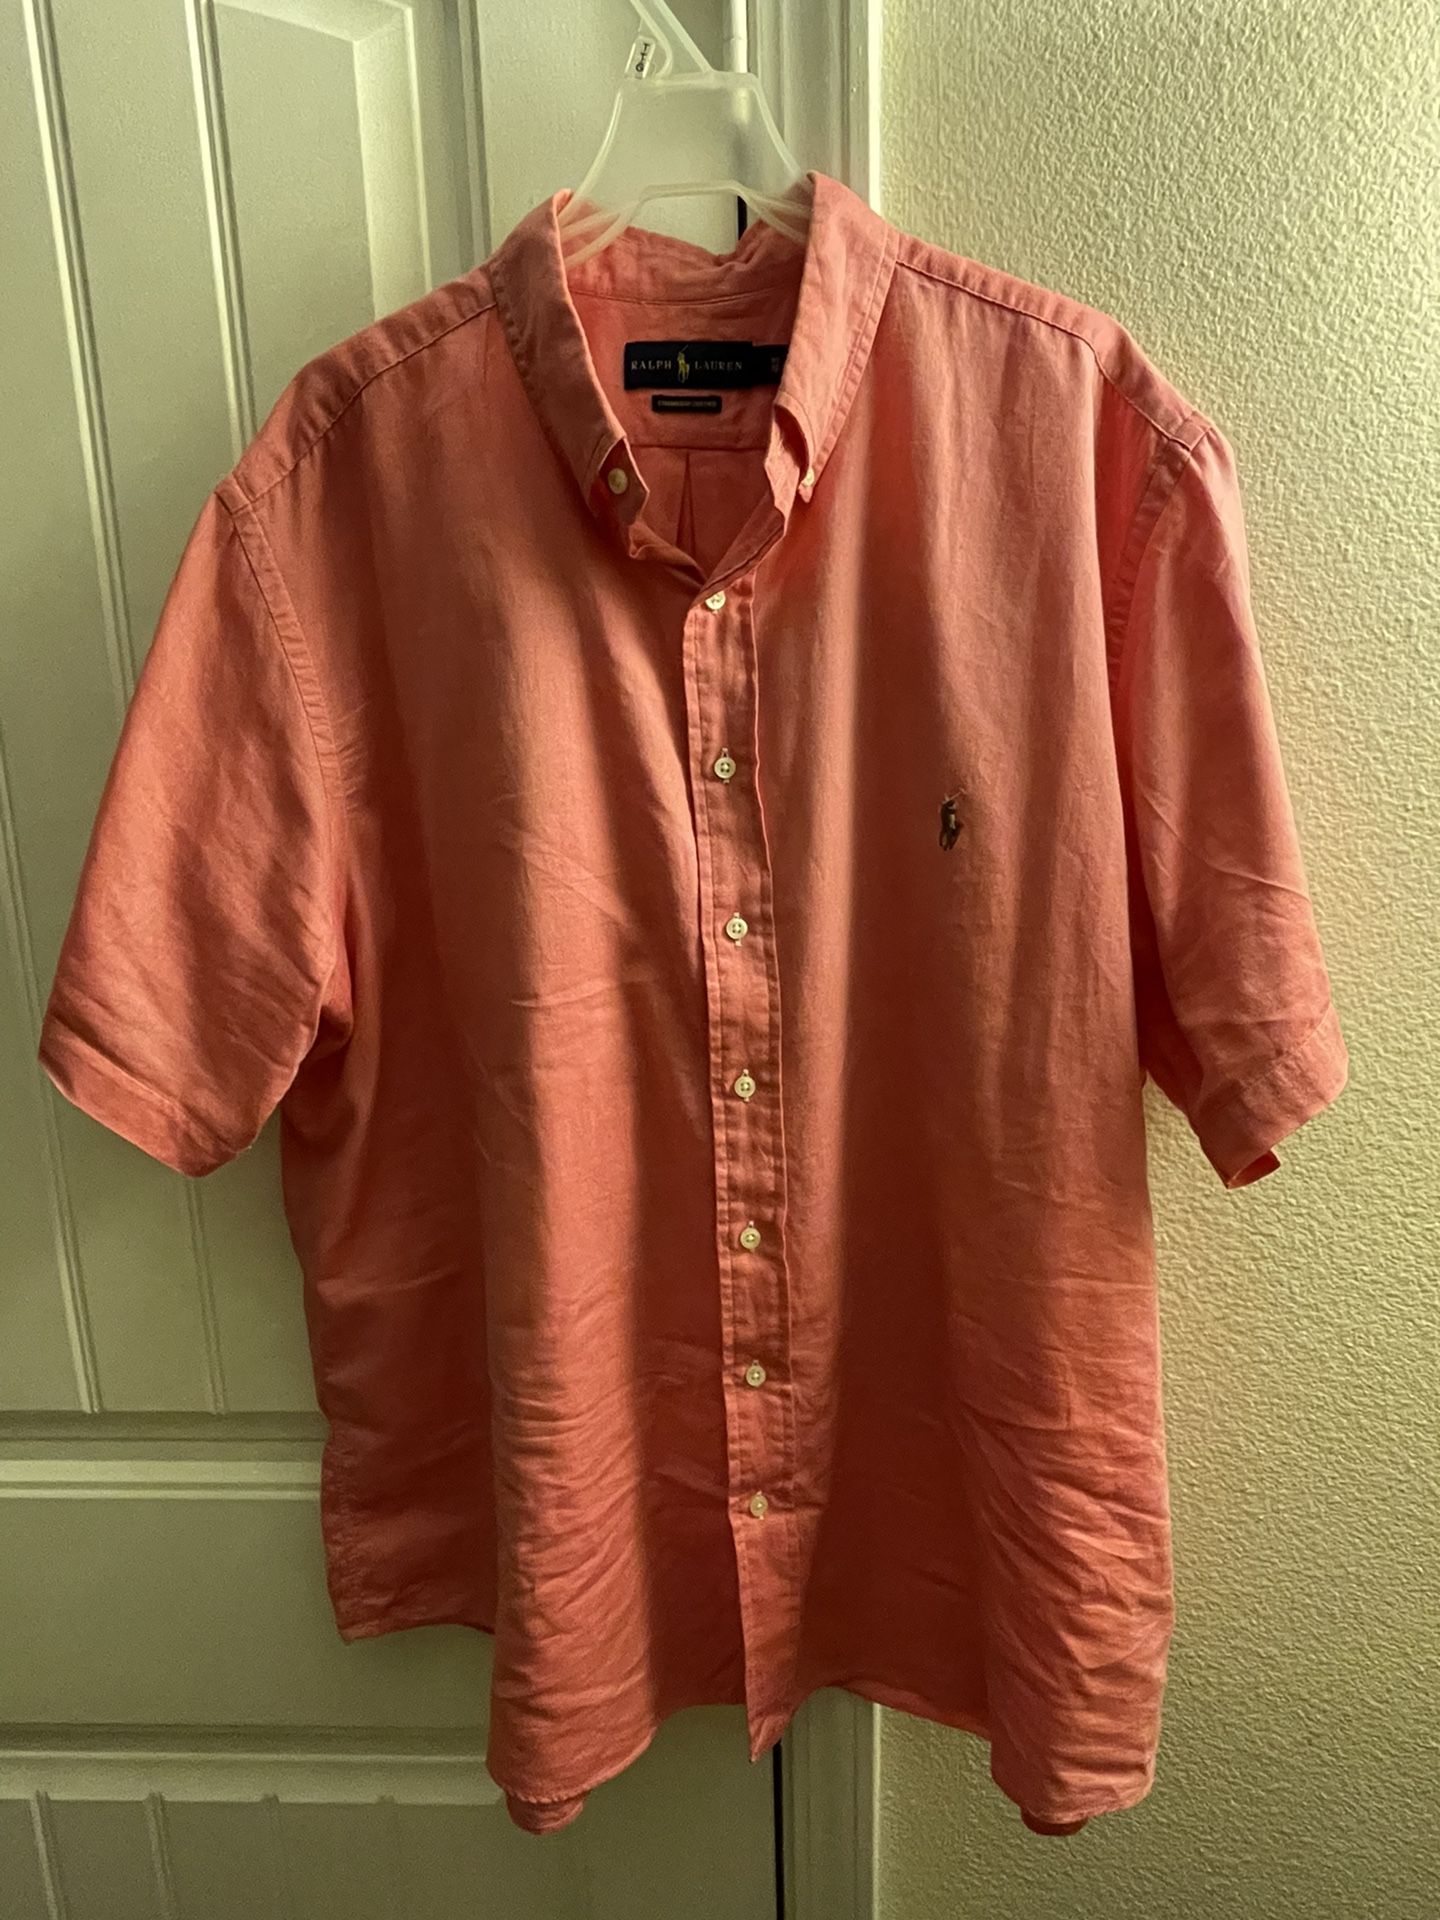 Ralph Lauren Dress Shirt 